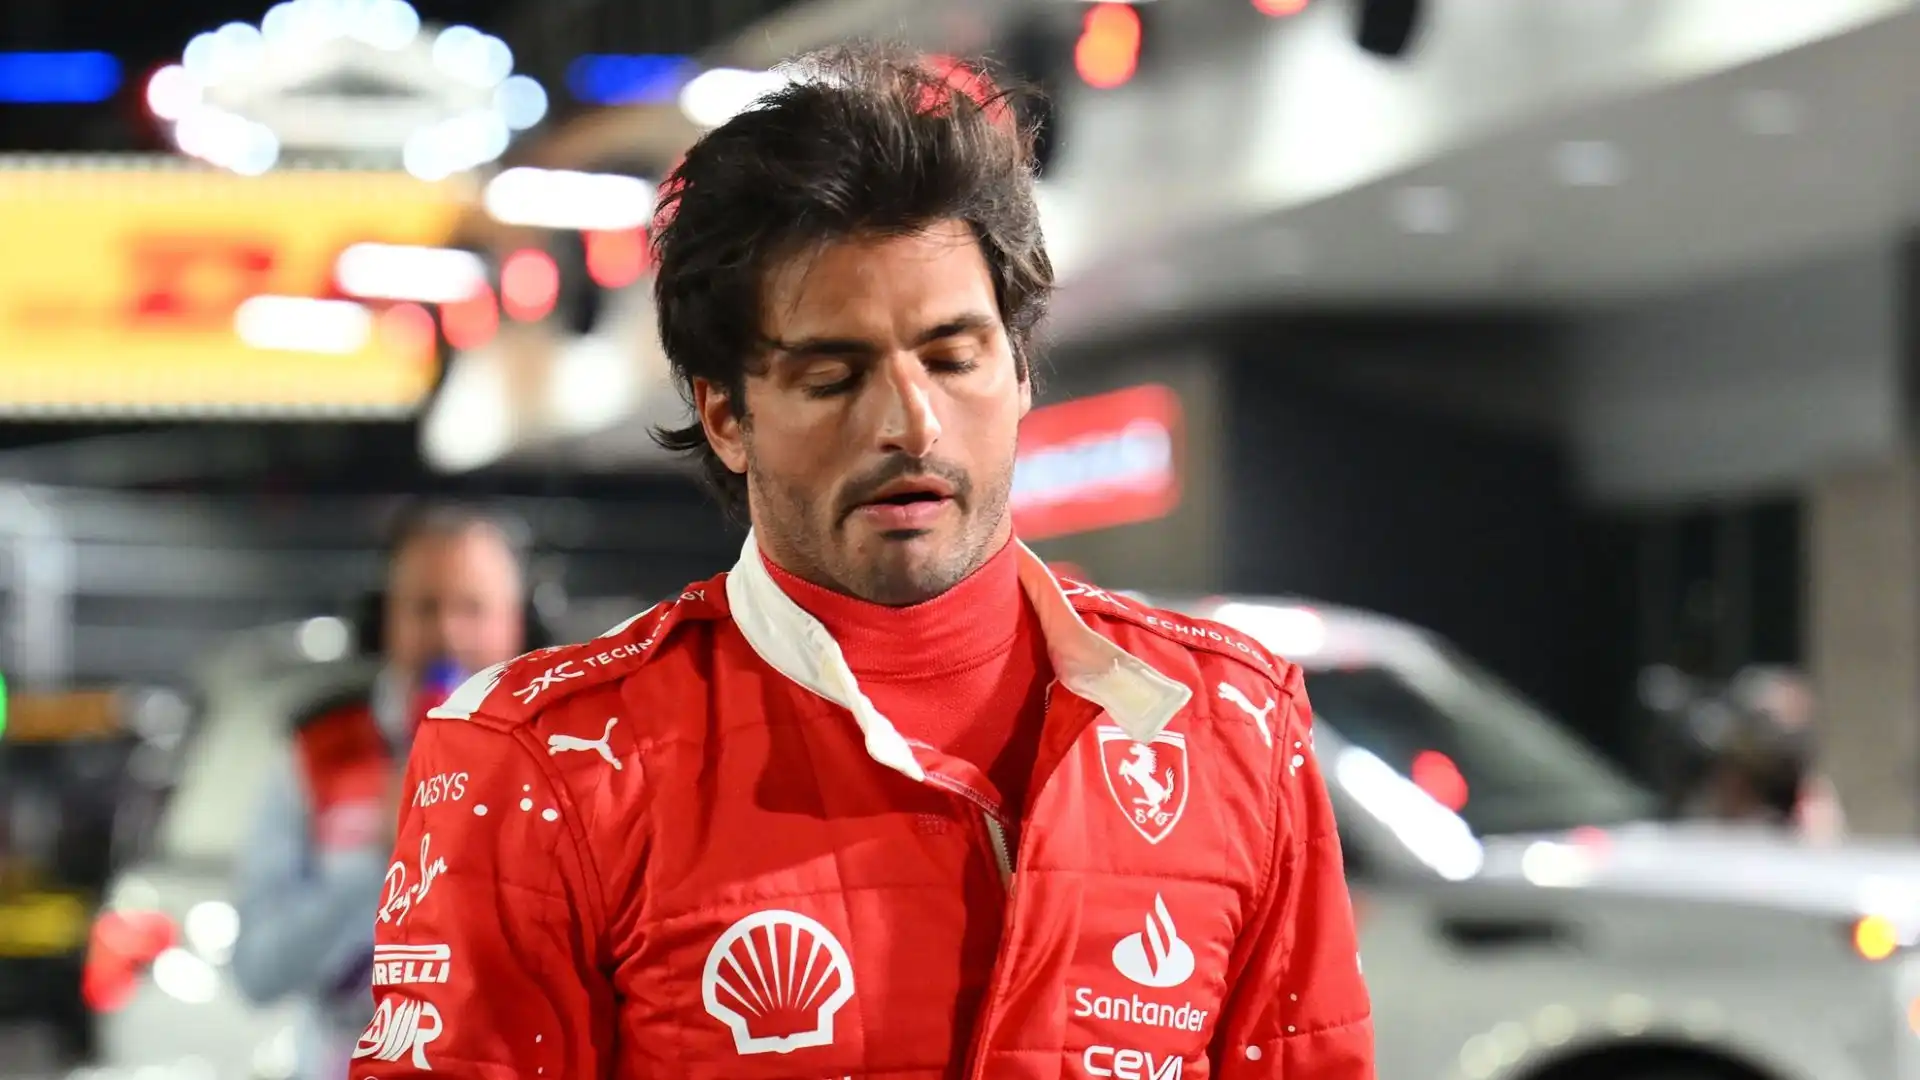 Dopo appena pochi minuti dal via della sessione di libere, un tombino ha danneggiato la Ferrari di Sainz